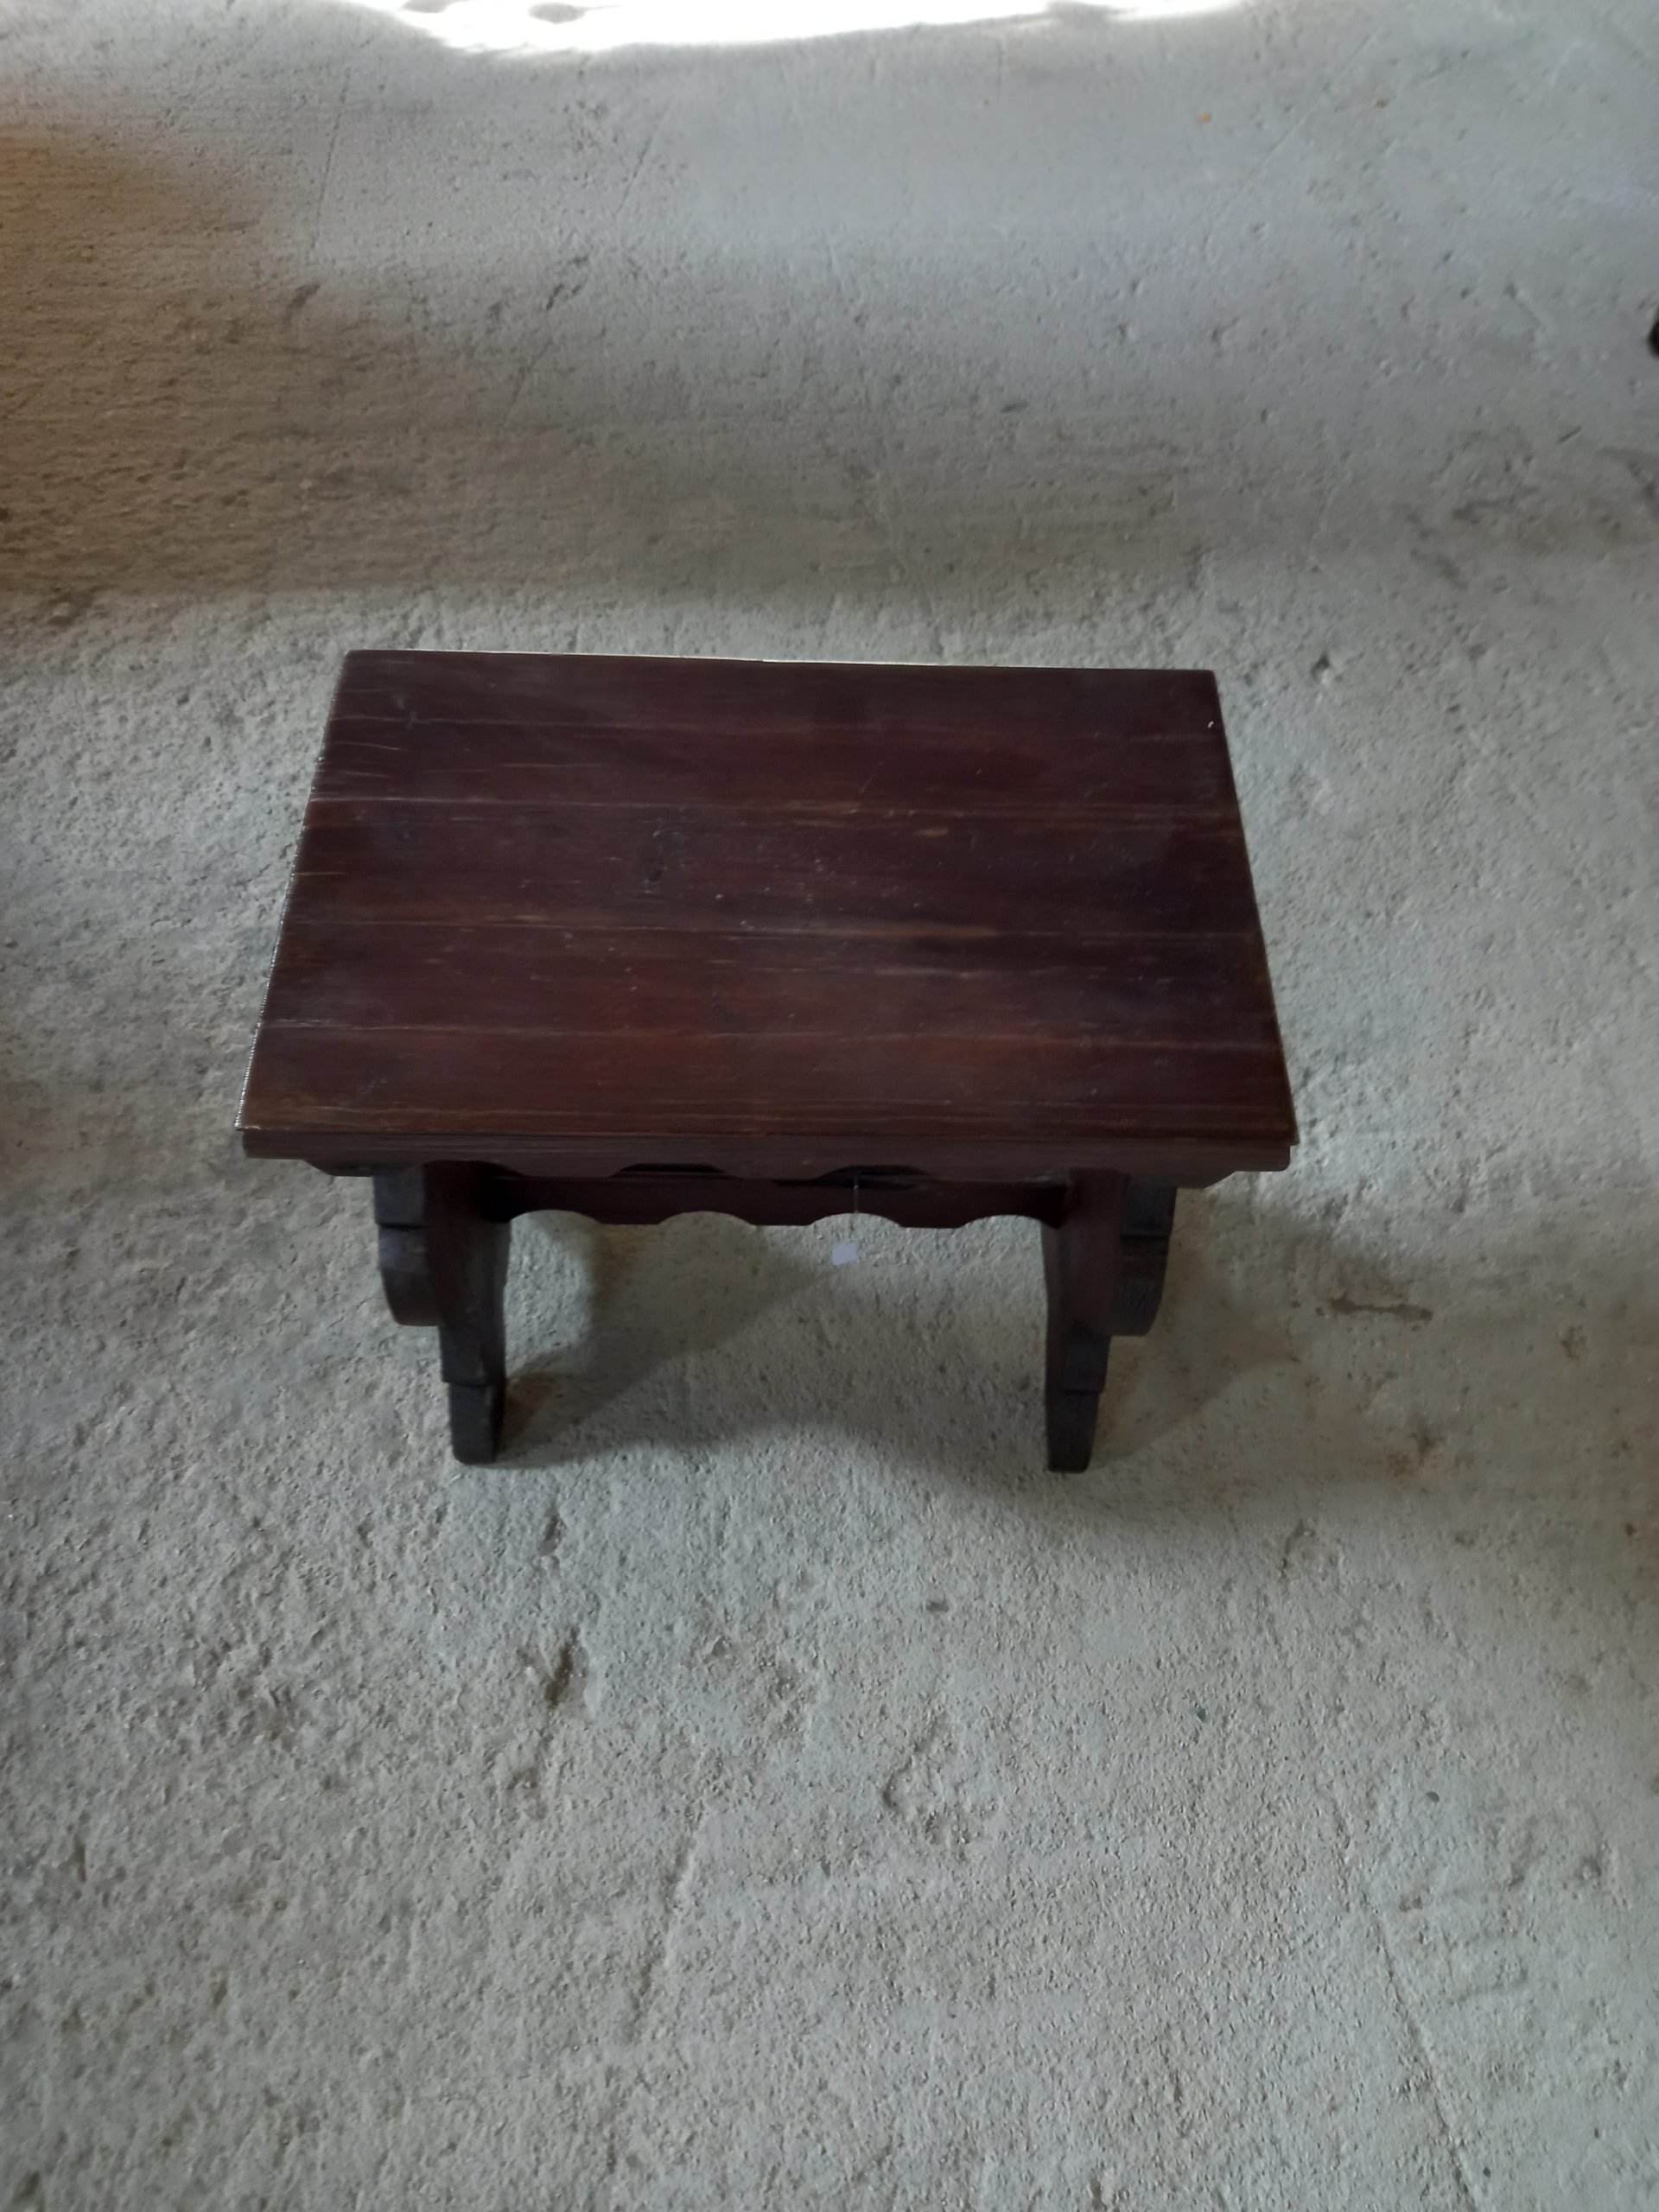 παλιό μικρό ξύλινο σκαμπό σε σκούρο χρώμα, παλιό μικρό σκαλιστό καθισματάκι, μικρό καρεκλάκι,τραπεζάκι βοηθητικό με σκαλίσματα στα πόδια,παλιό επιπλάκι χειροποίητο